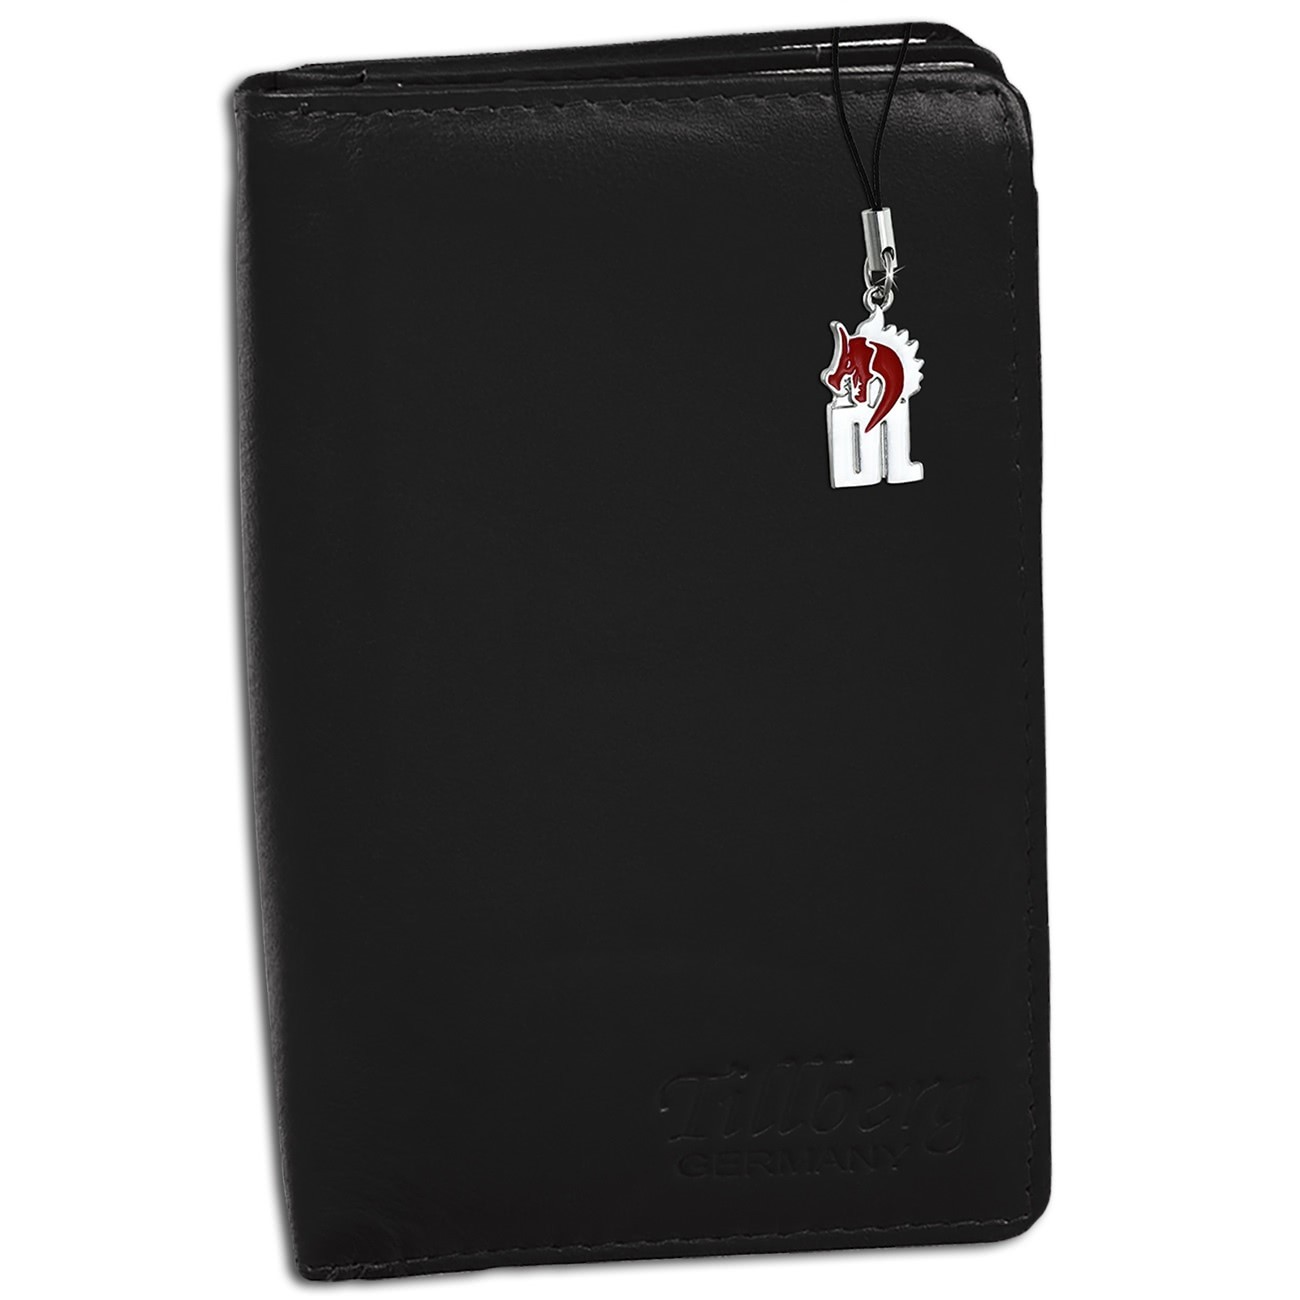 DrachenLeder Damen Leder Portemonnaie schwarz RFID Schutz Geldbeutel OPR710S